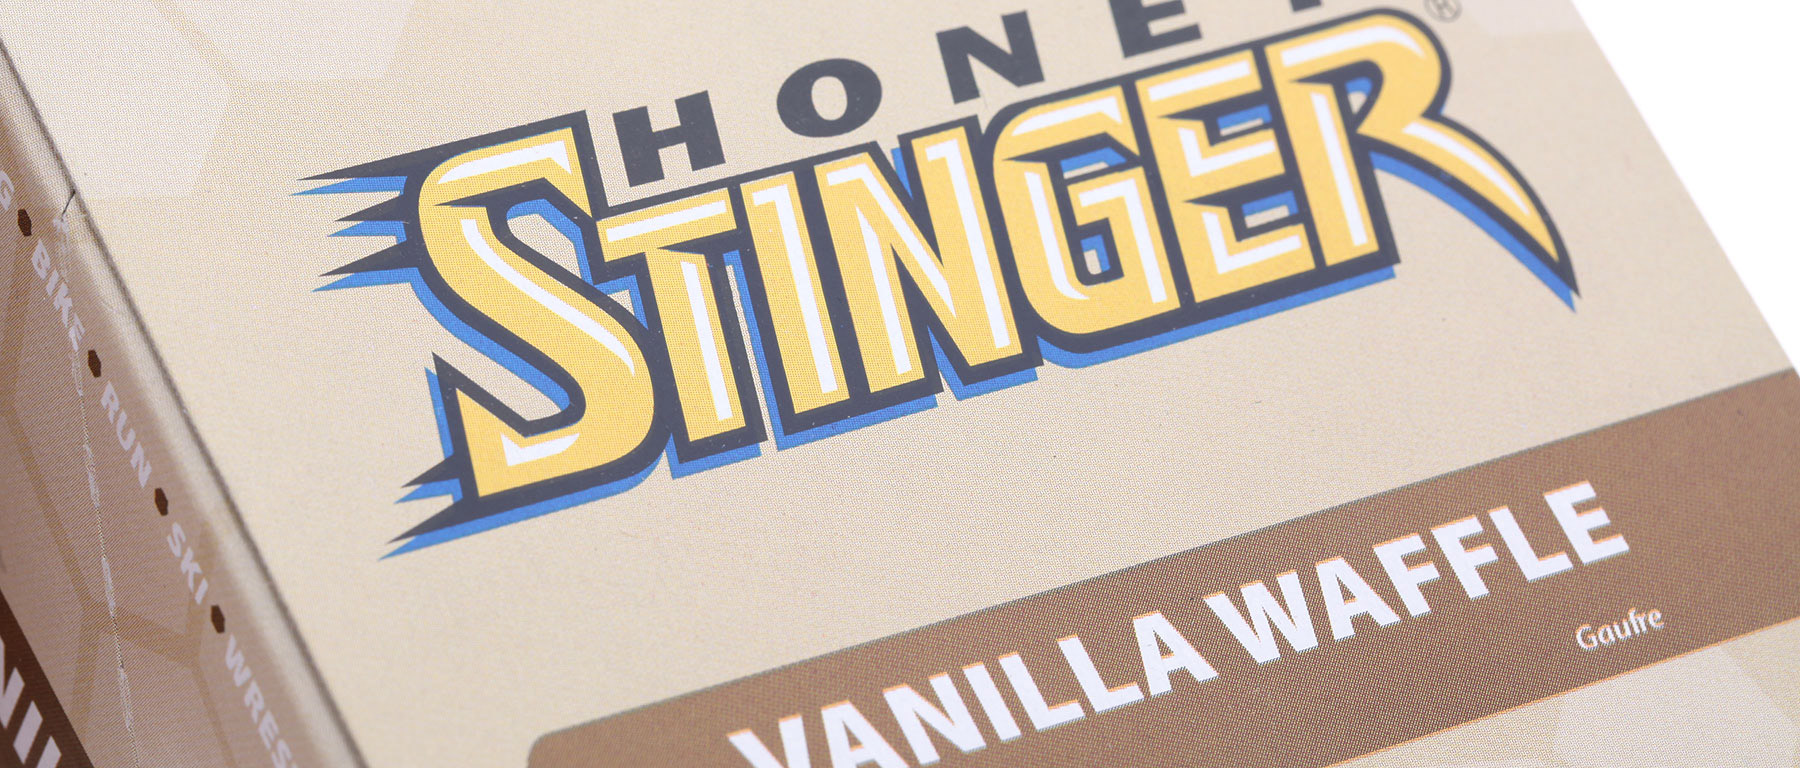 Honey Stinger Waffle Box of 16